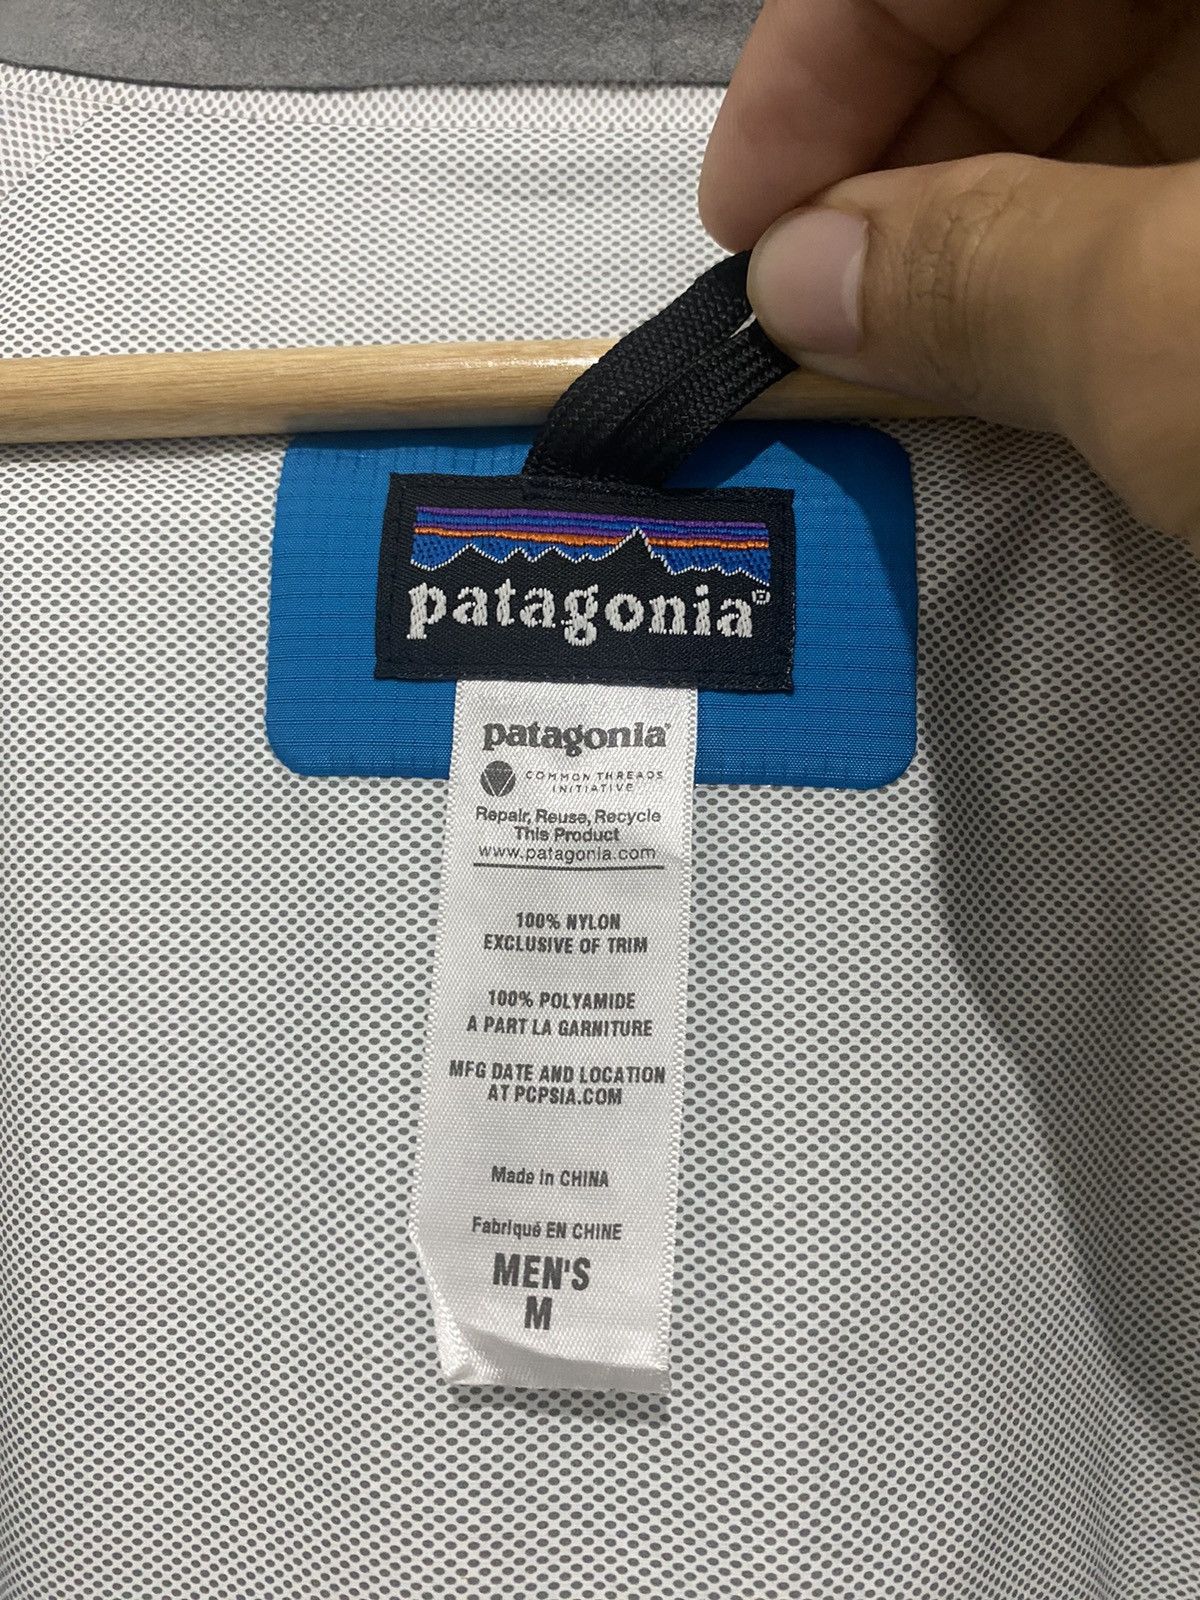 Patagonia Gorpcore Waterproof Jacket - 7